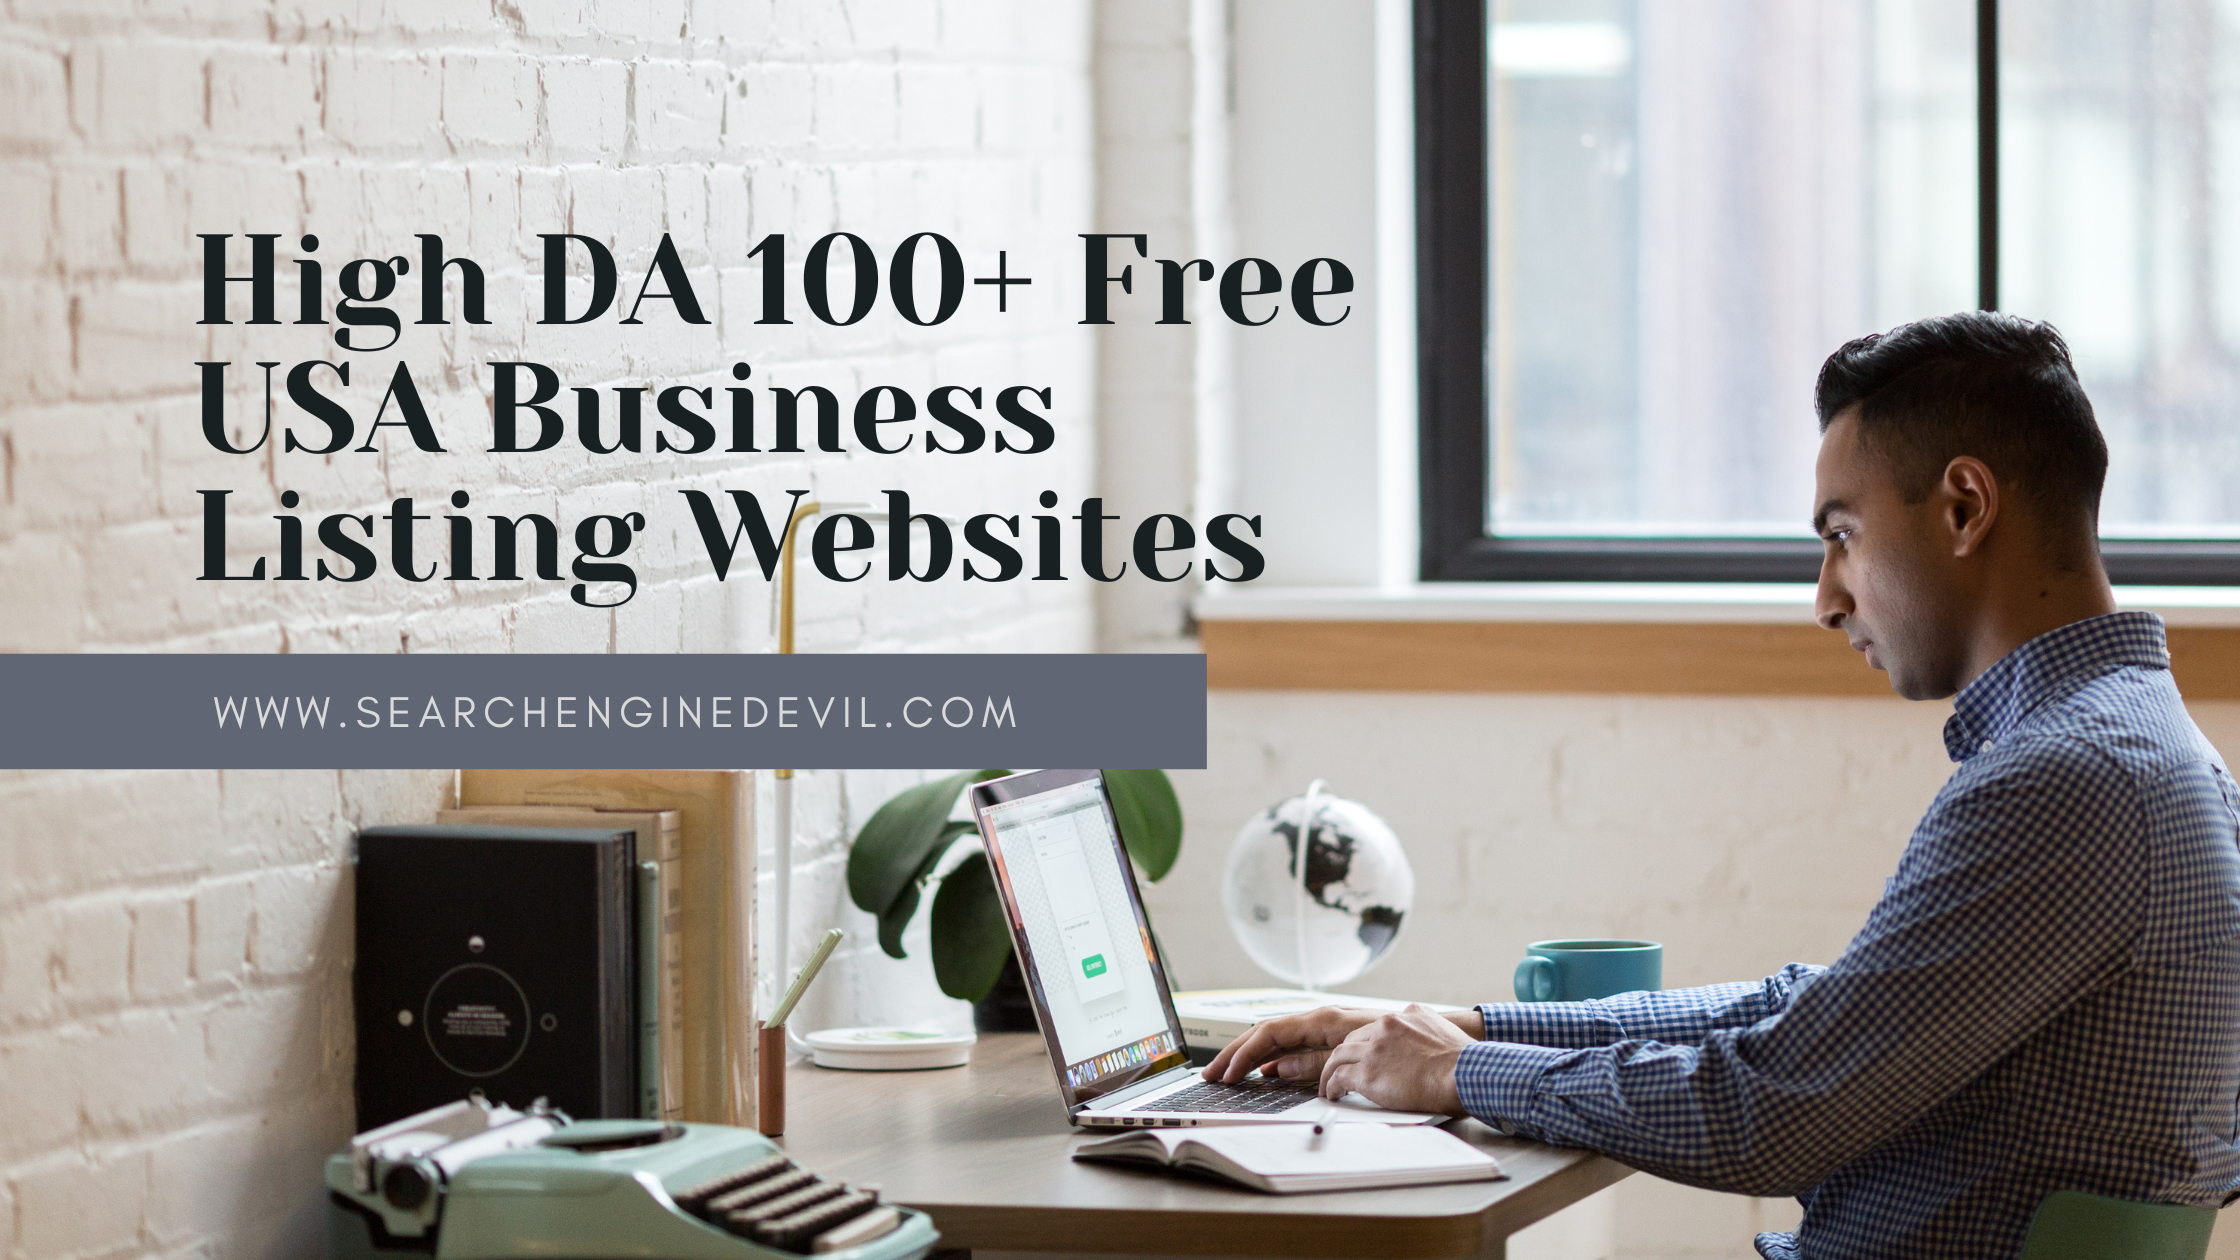 High DA 100+ Free USA Business Listing Websites